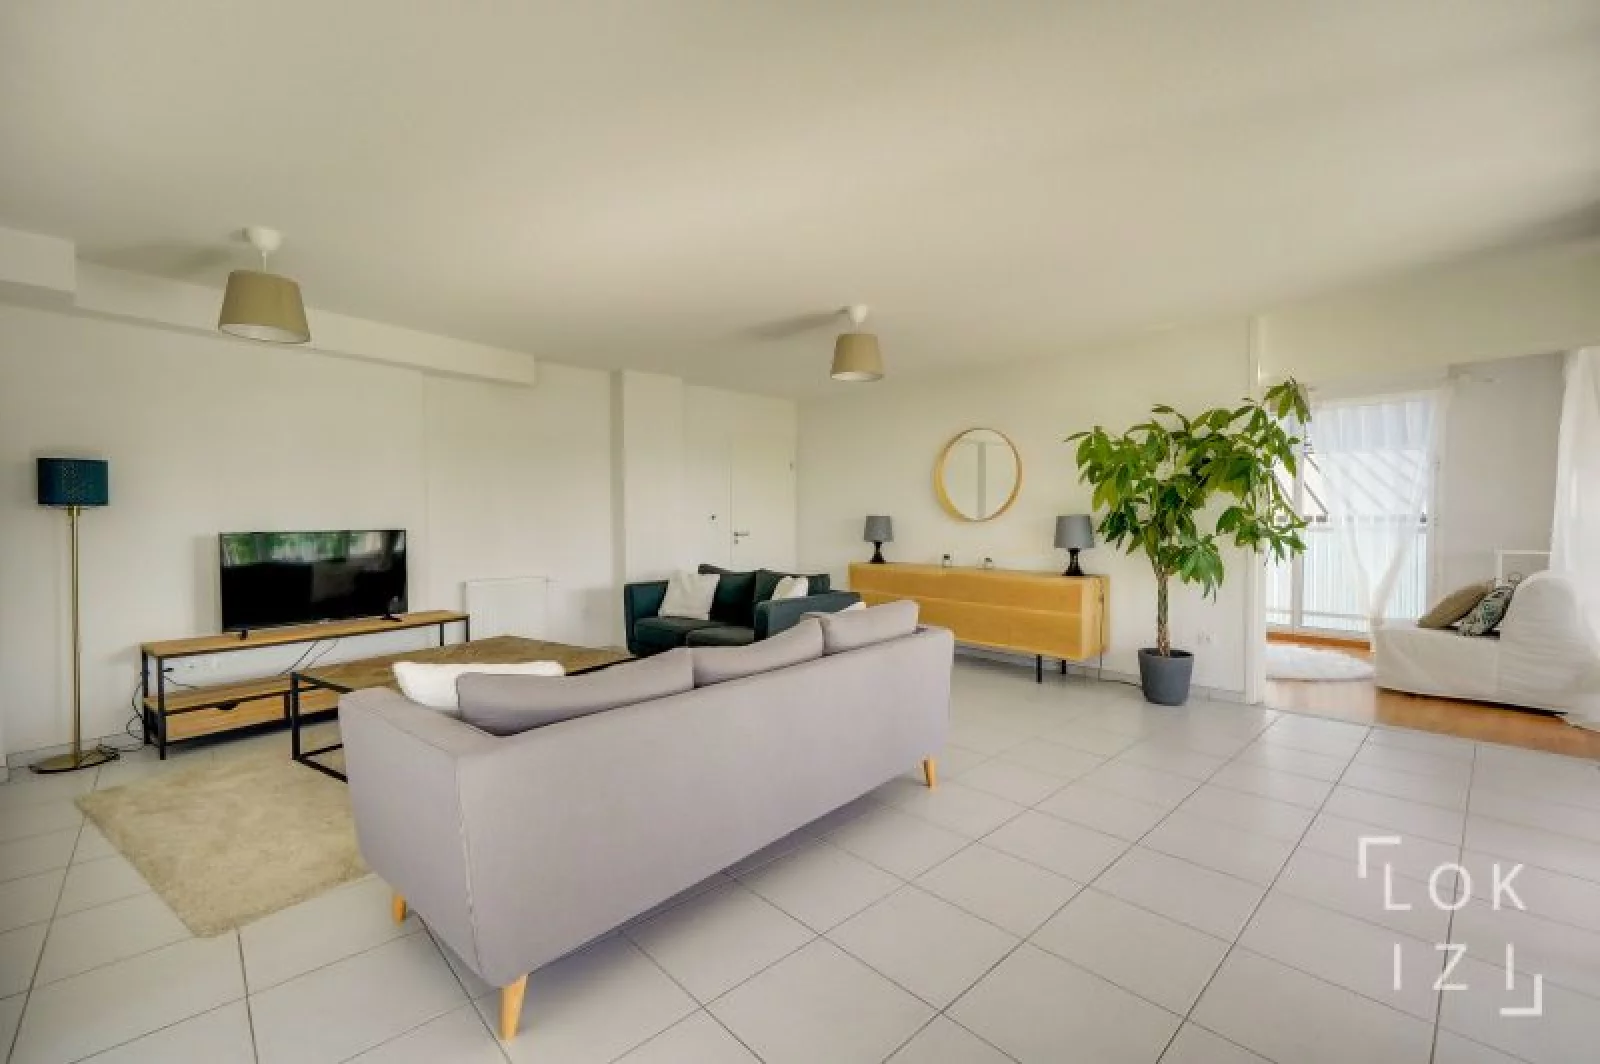 Location appartement meublé 4 pièces 101m² (Bordeaux - Bassins à flot)